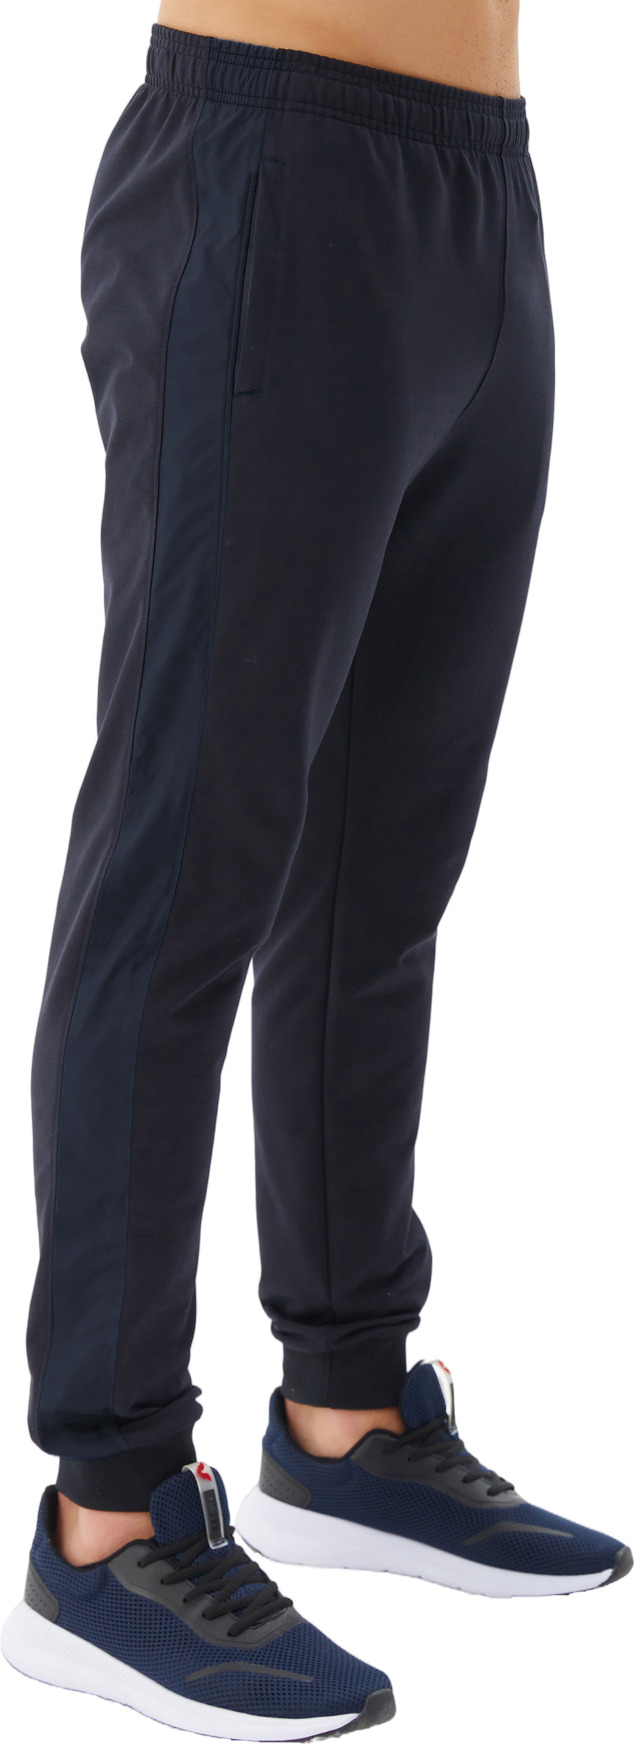 Спортивные брюки мужские Bilcee Men's Sweatpants синие 2XL